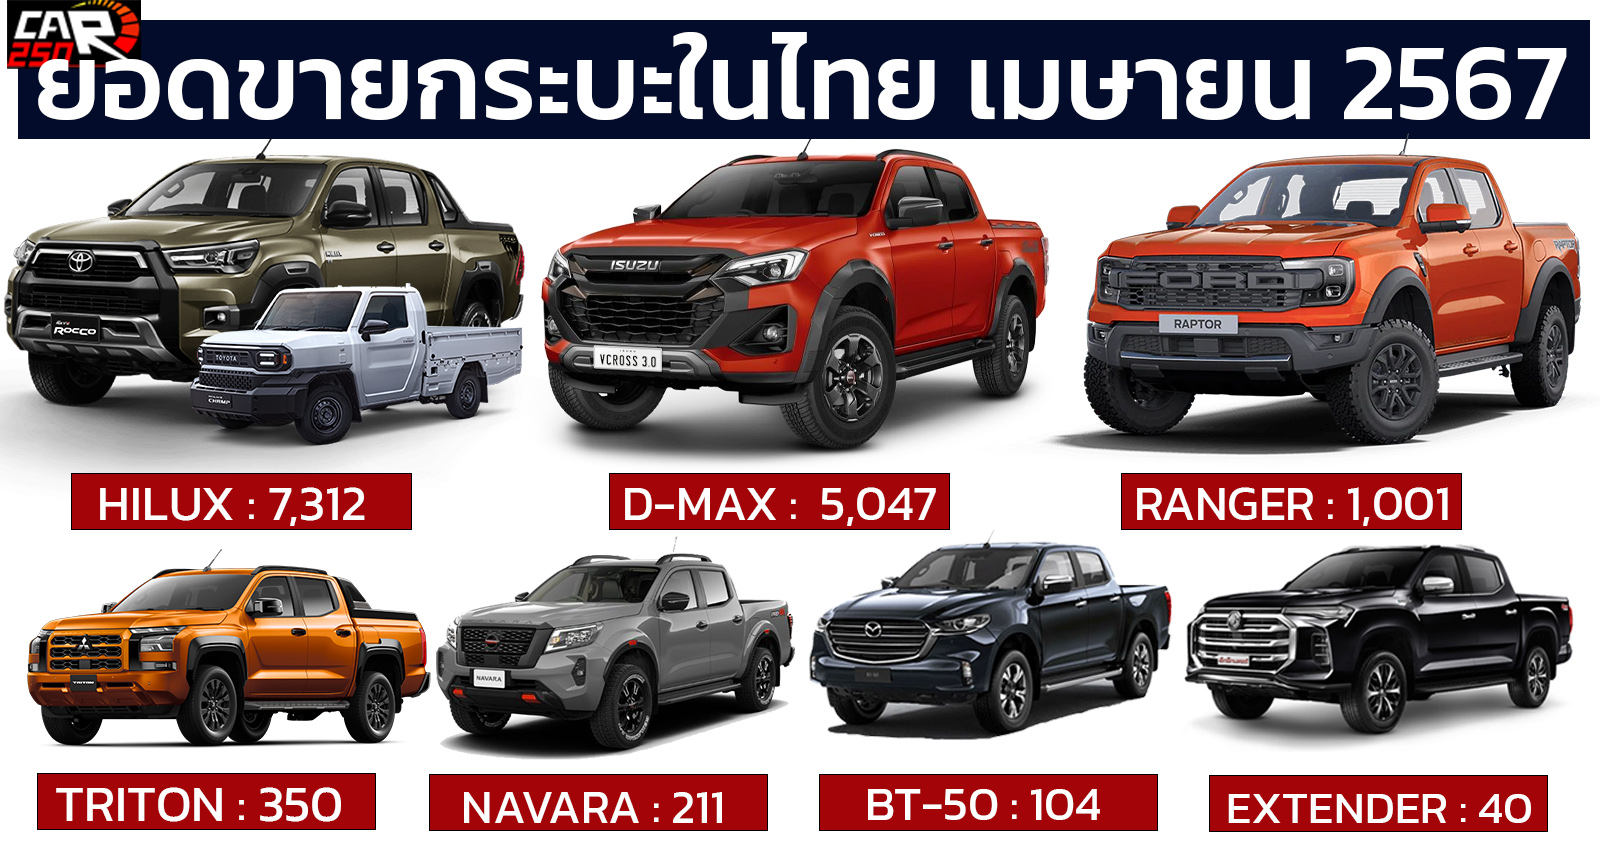 ยอดขายกระบะเมืองไทย เมษายน 2567 รวมกว่า 14,065 คัน